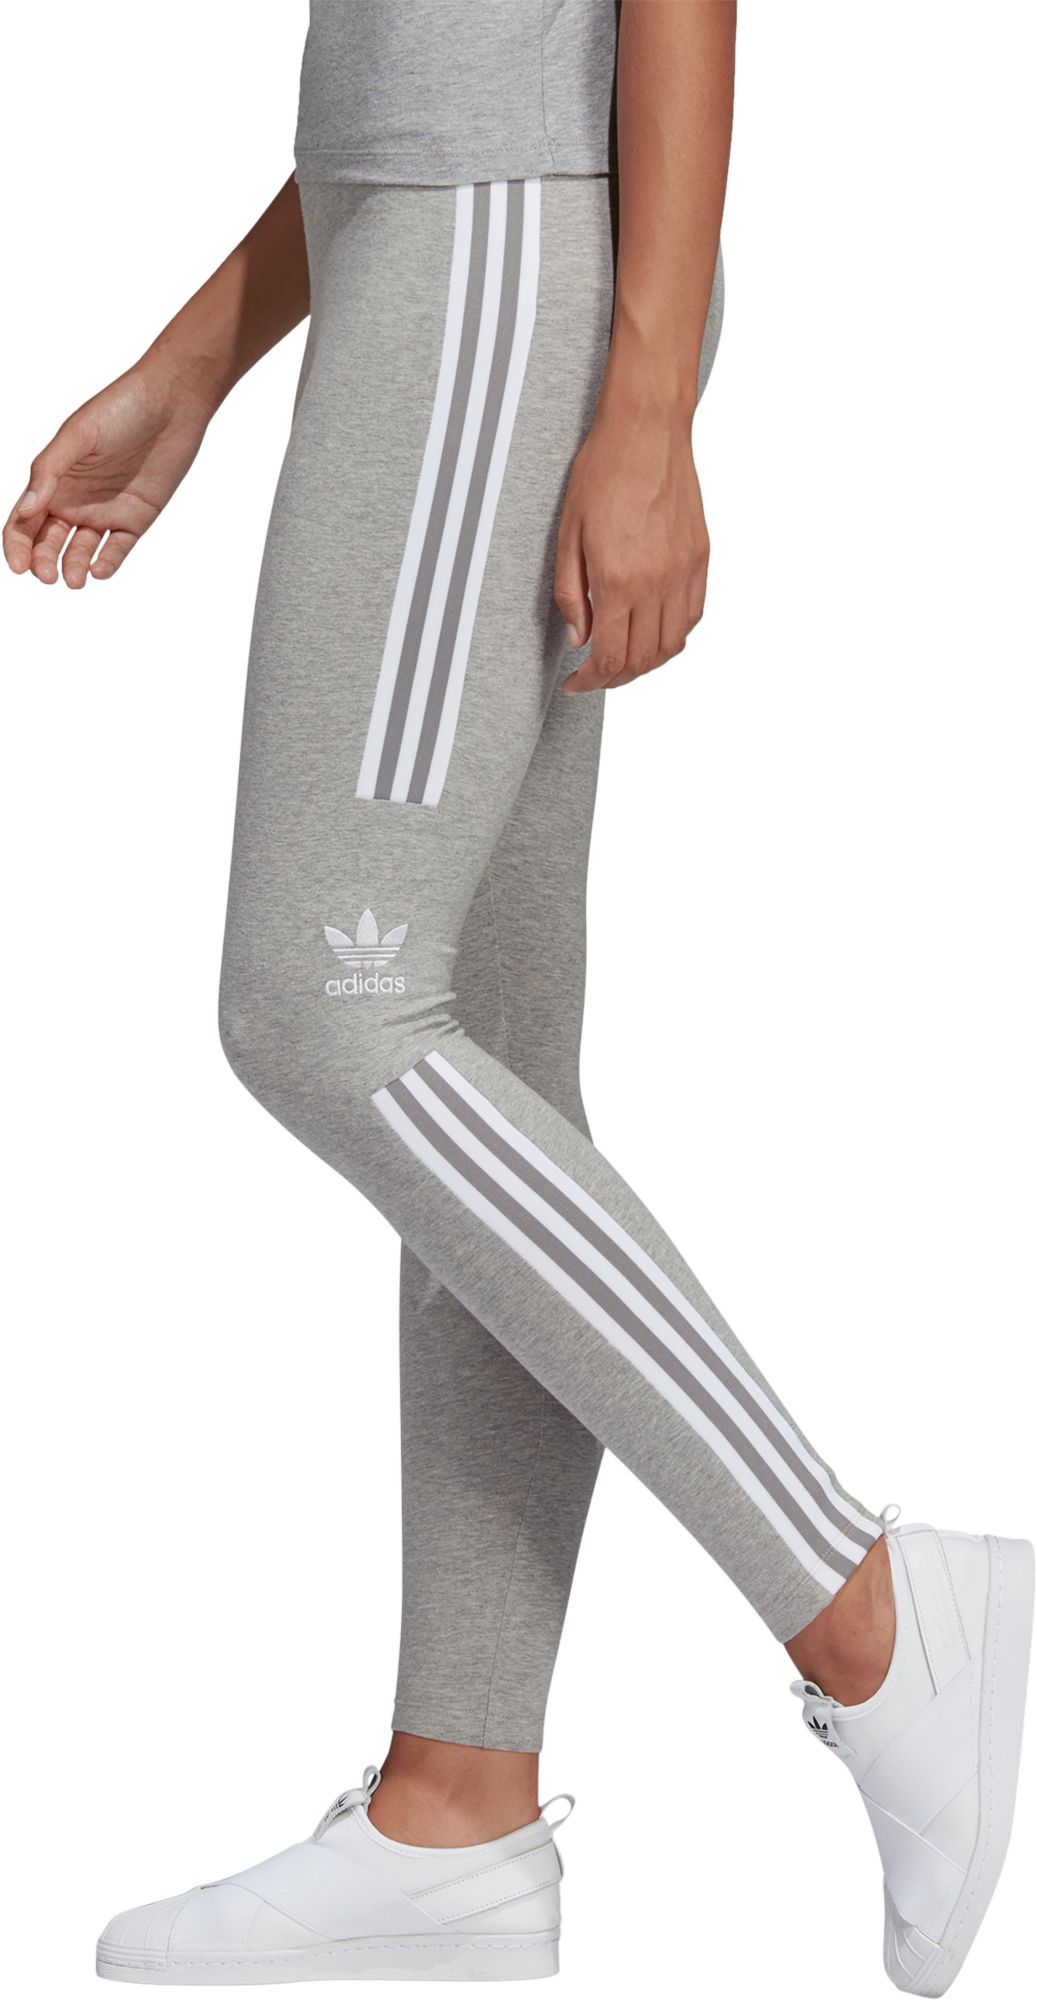 gray adidas tights